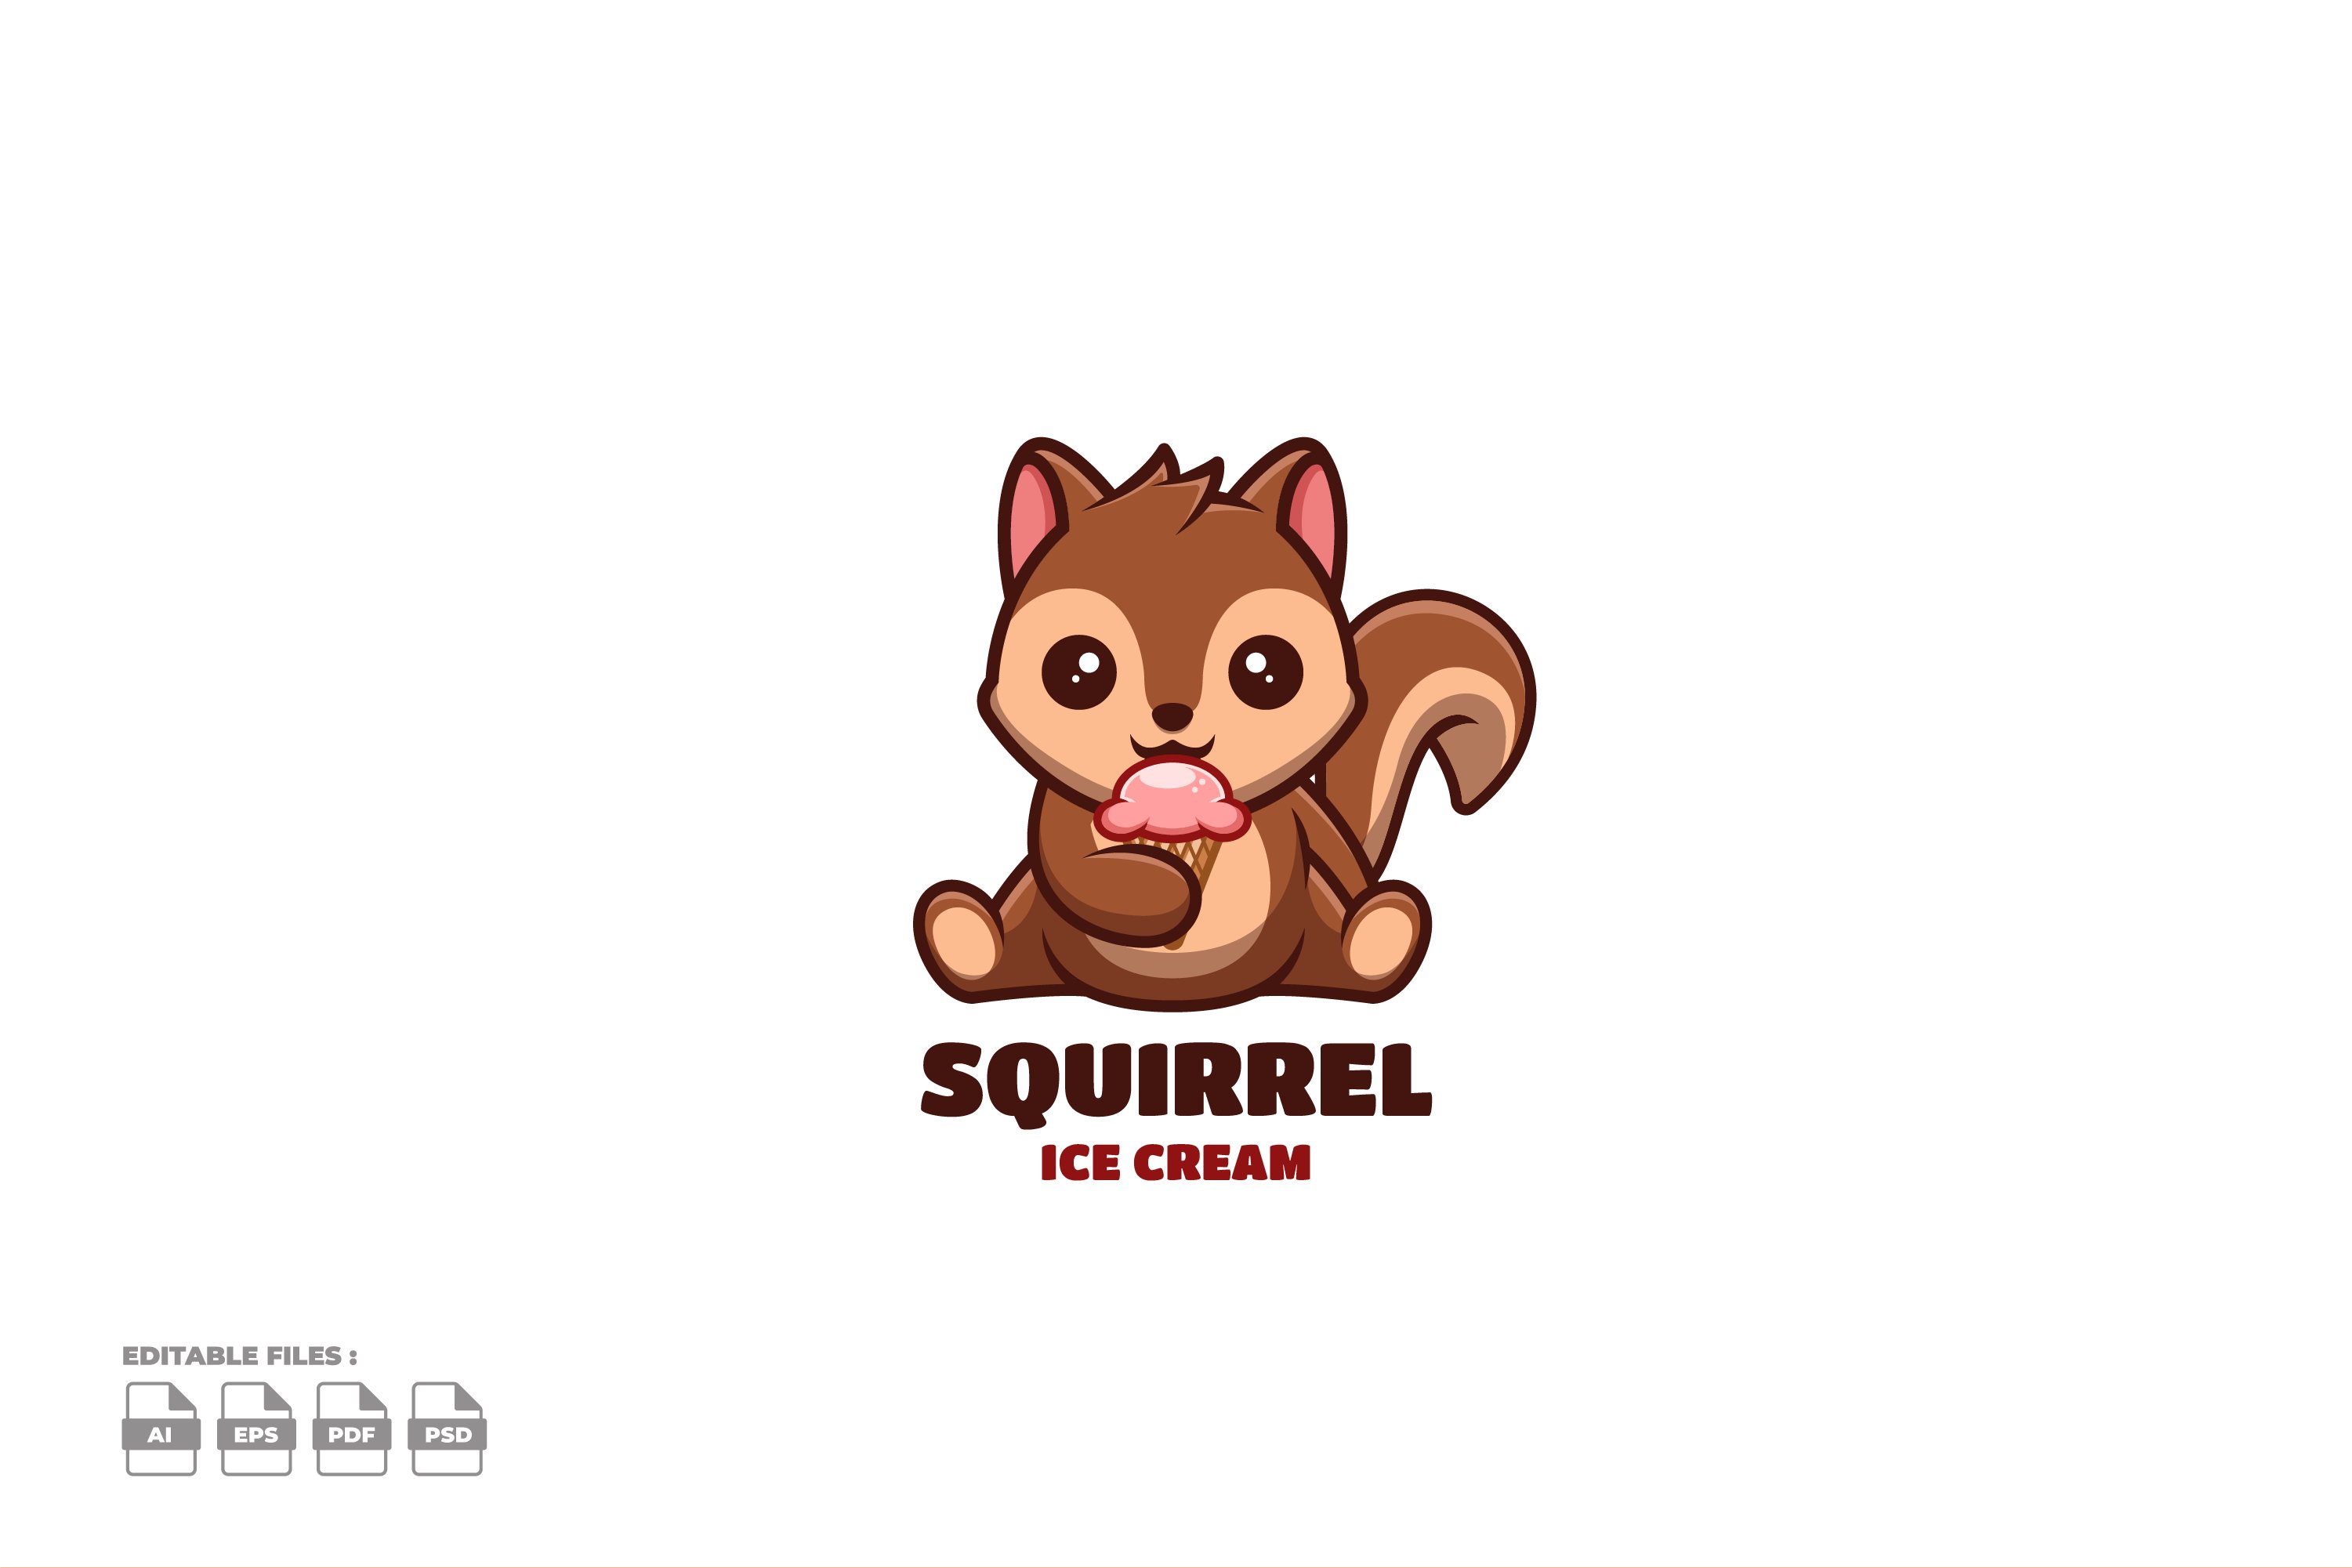 Ice Cream Squirrel Cute Mascot Logo cover image.